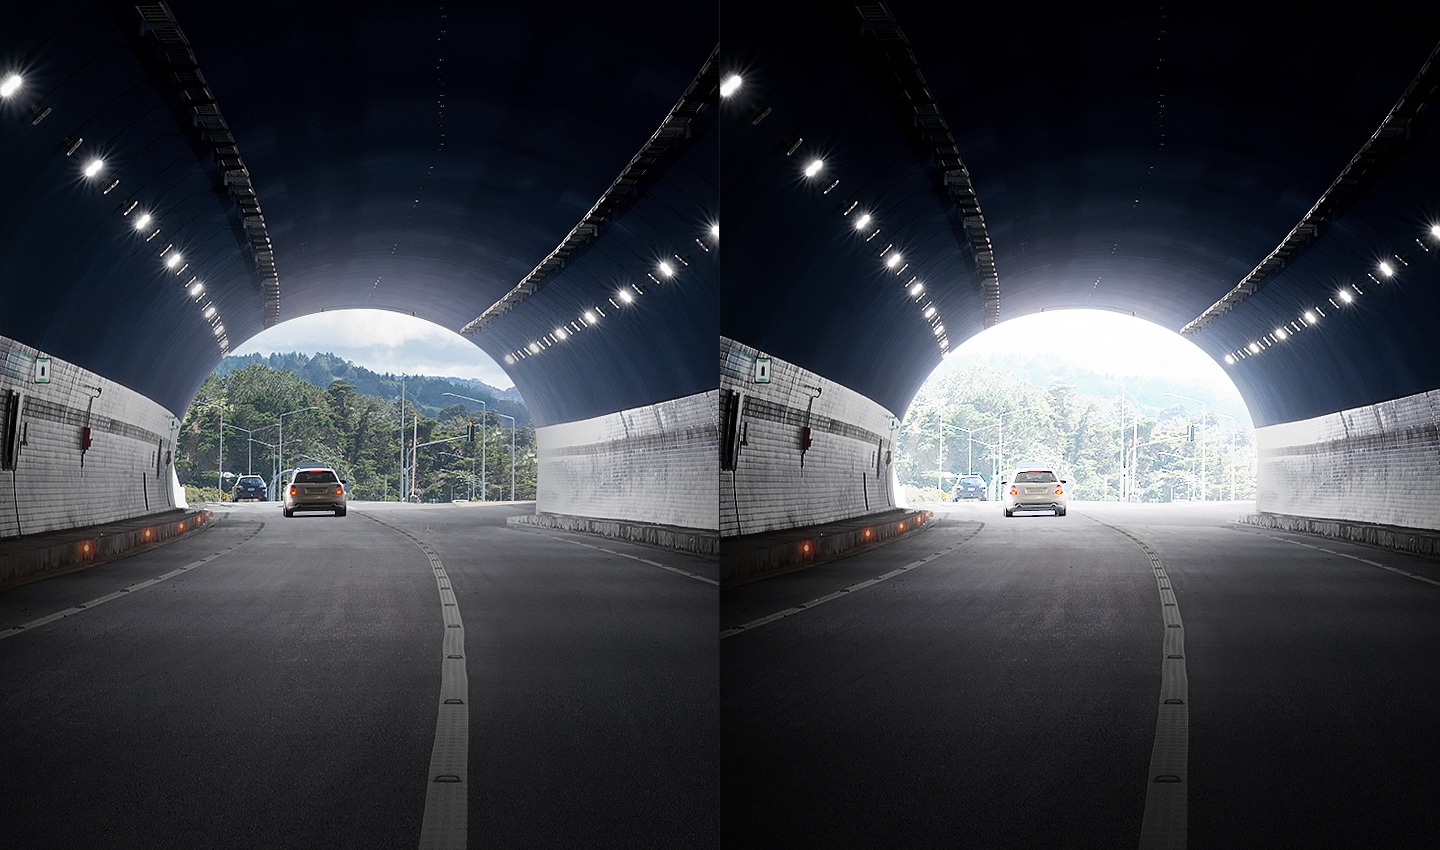 半分に分けて比較されるイメージです。 左はトンネルの外がクリアに見え、右はトンネルの外がぼやけて見えます。